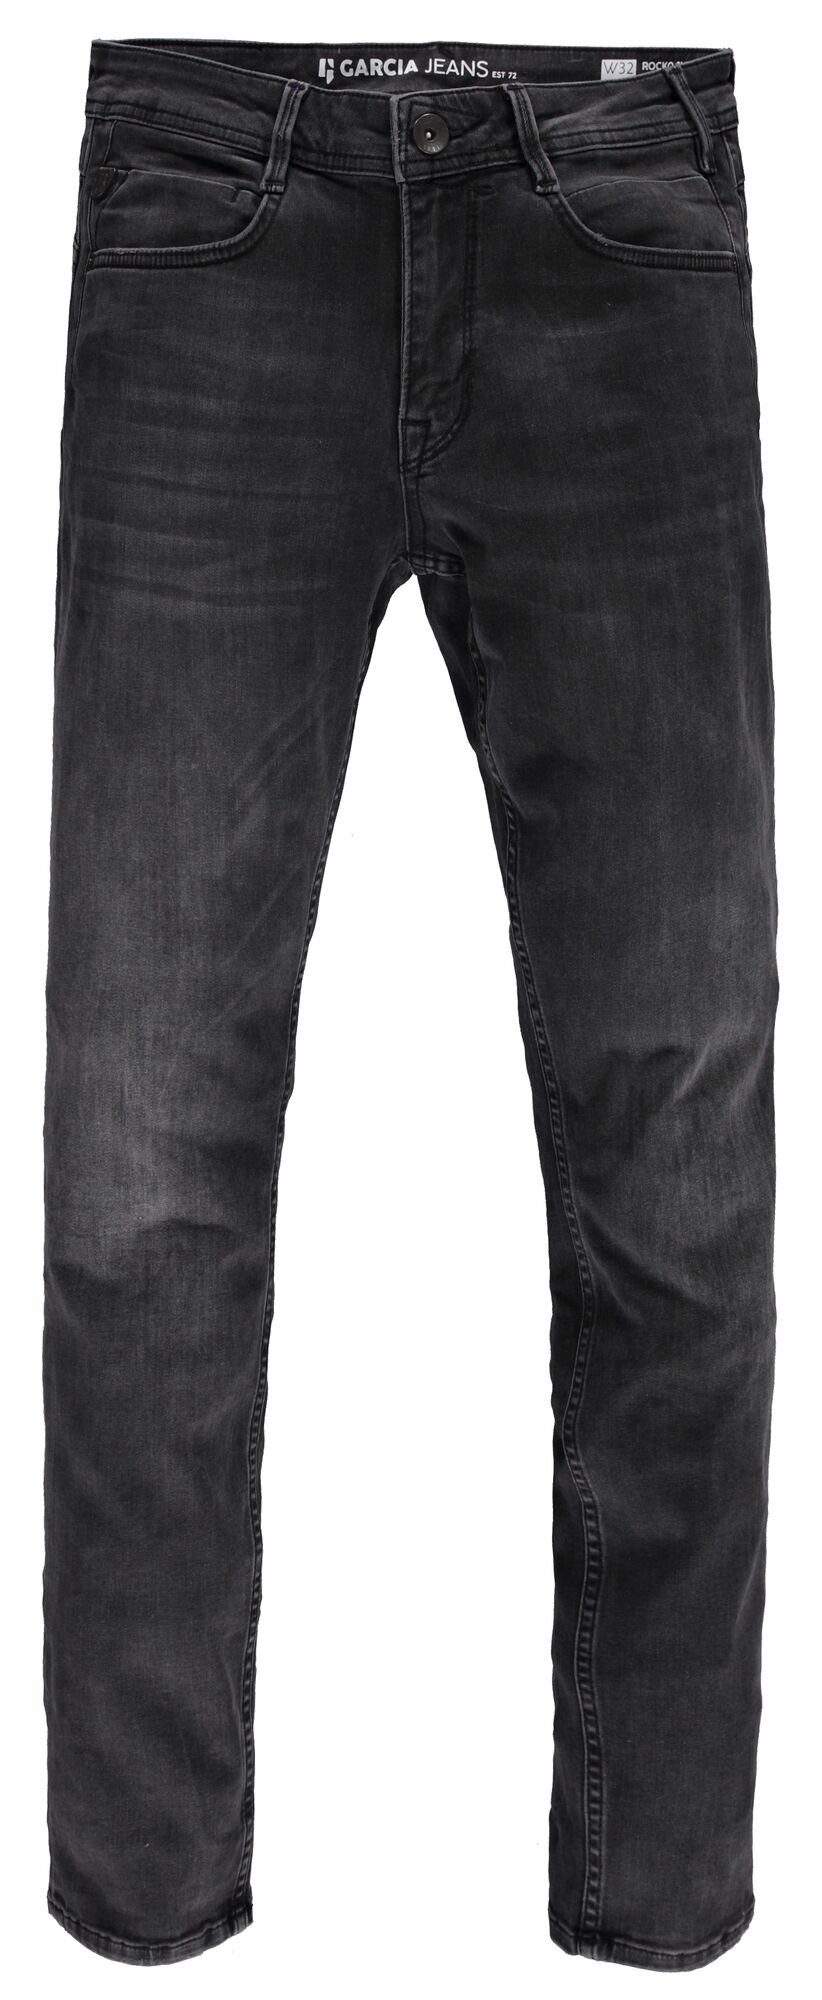 5-Pocket-Jeans grey schwarz GARCIA JEANS ROCKO dark GARCIA 690.6080 used